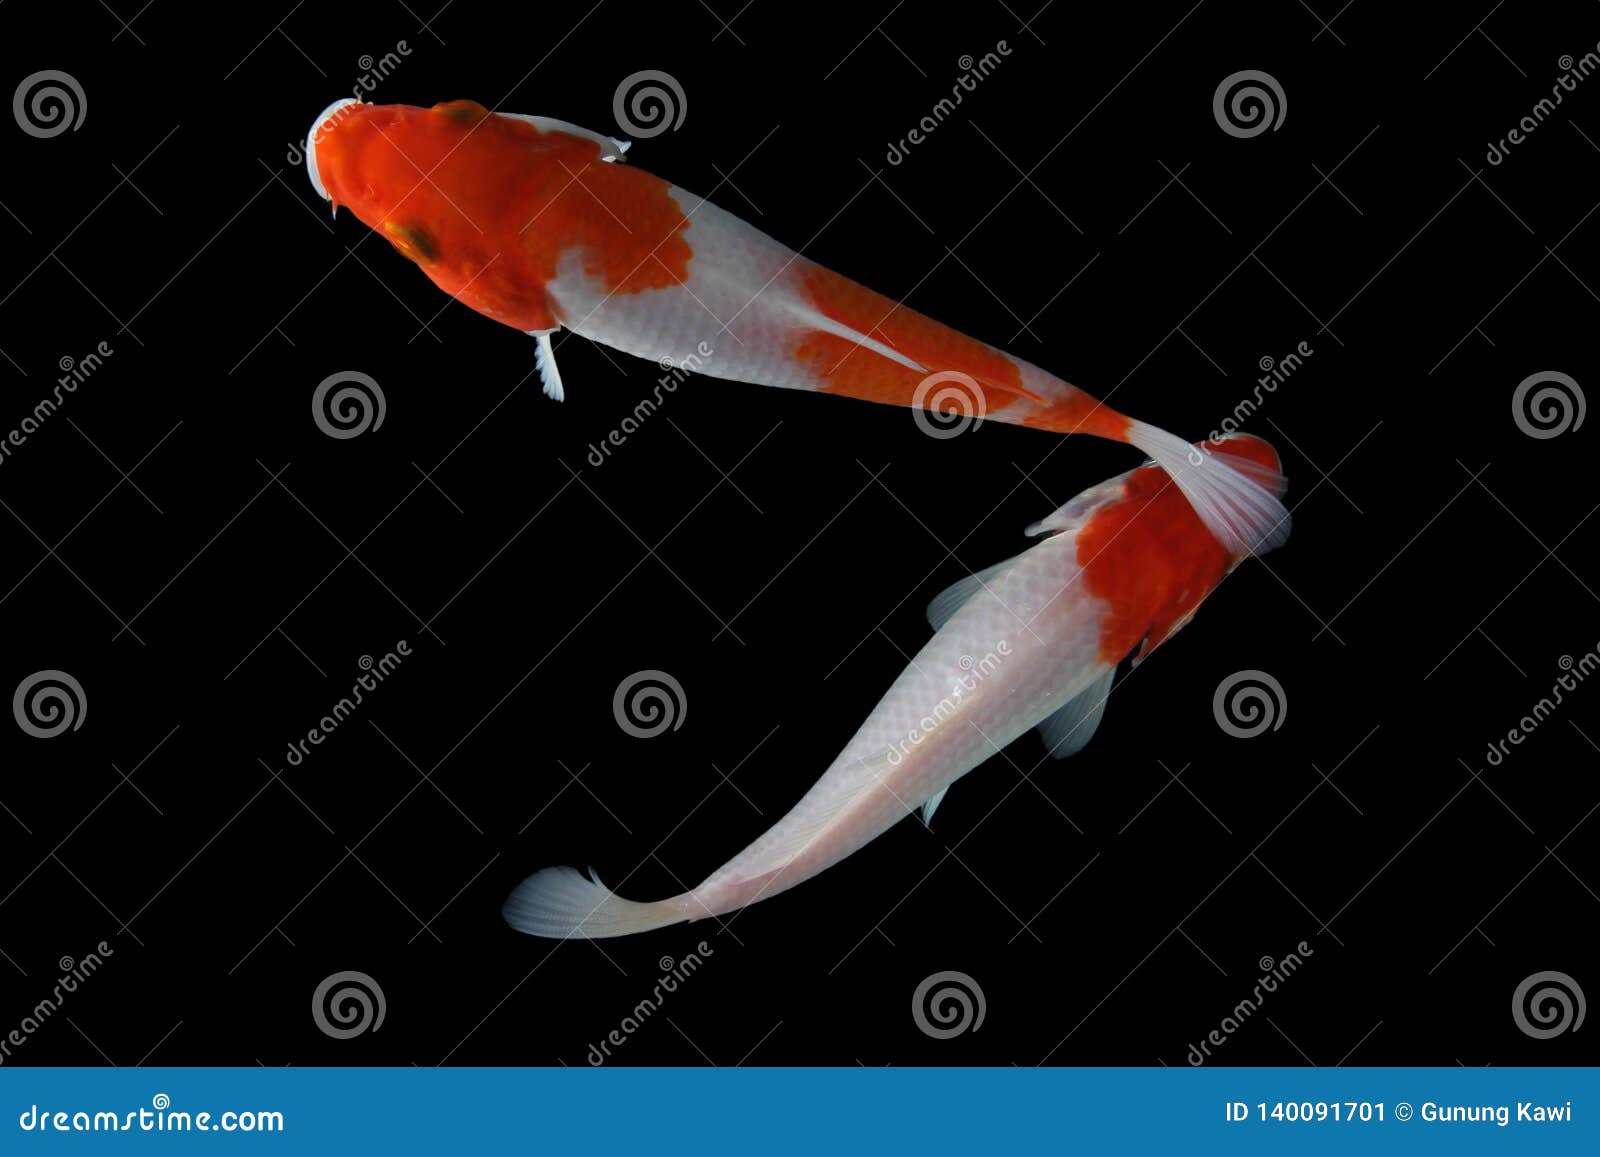 Koi fish Black background stock image. Image of goldfish